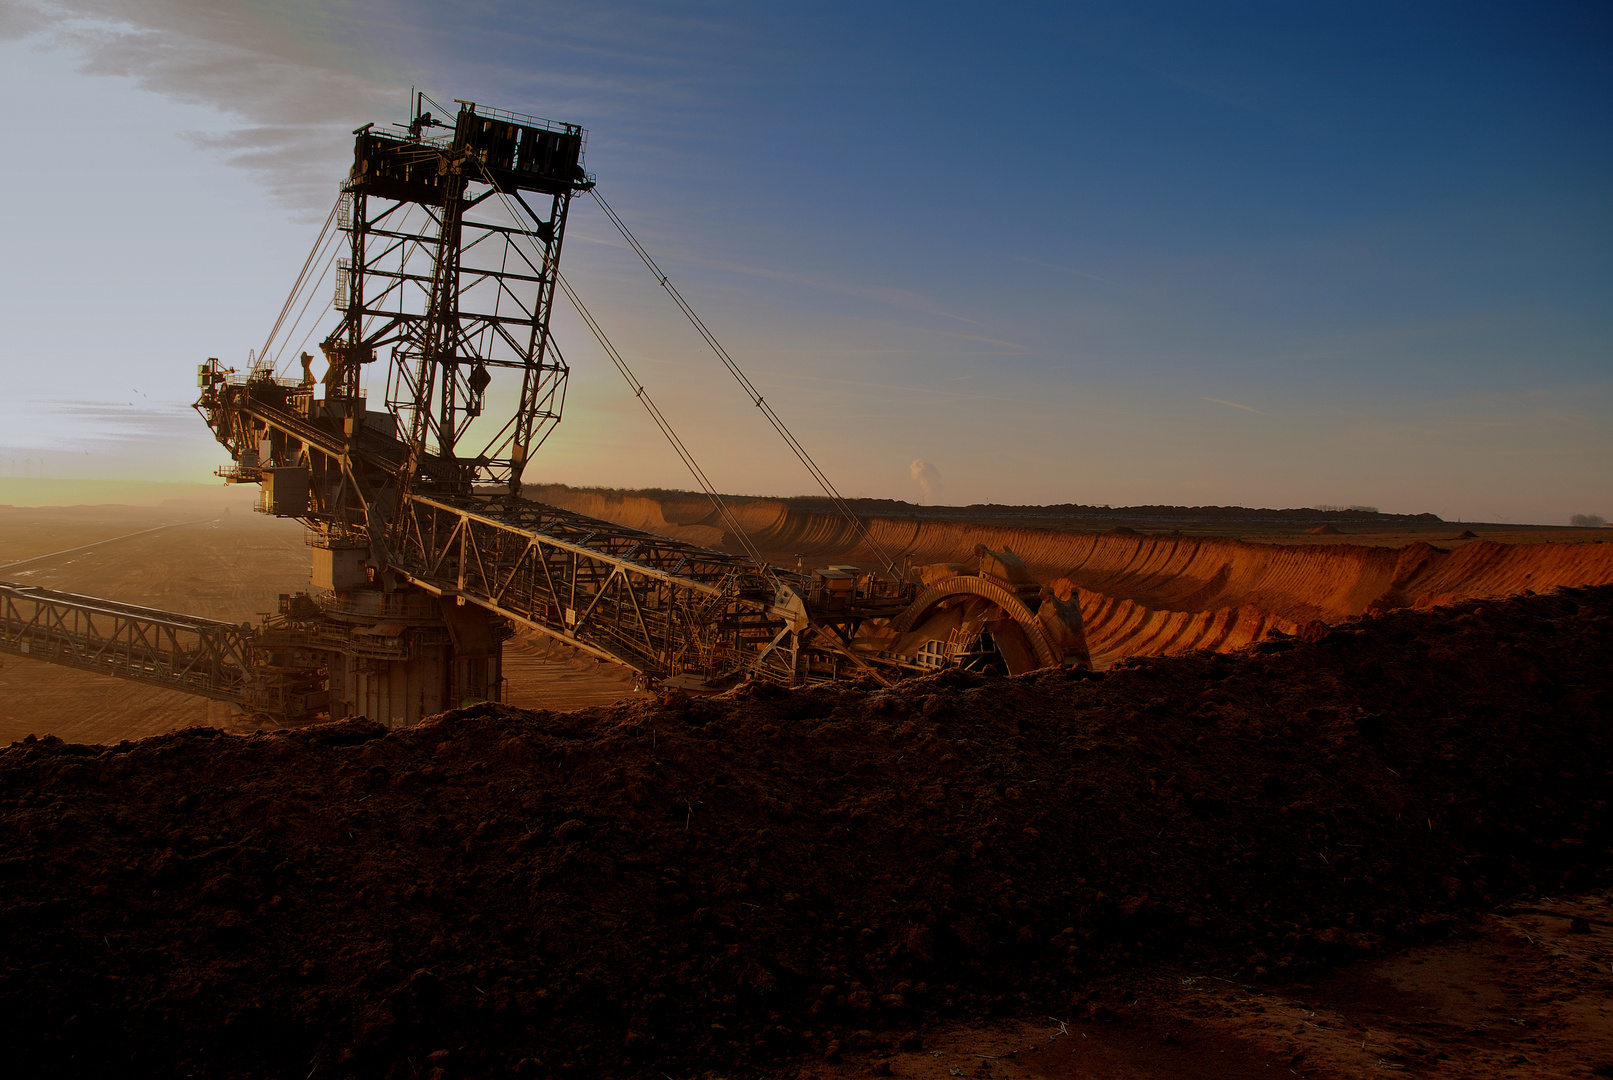 braunkohle coal mining